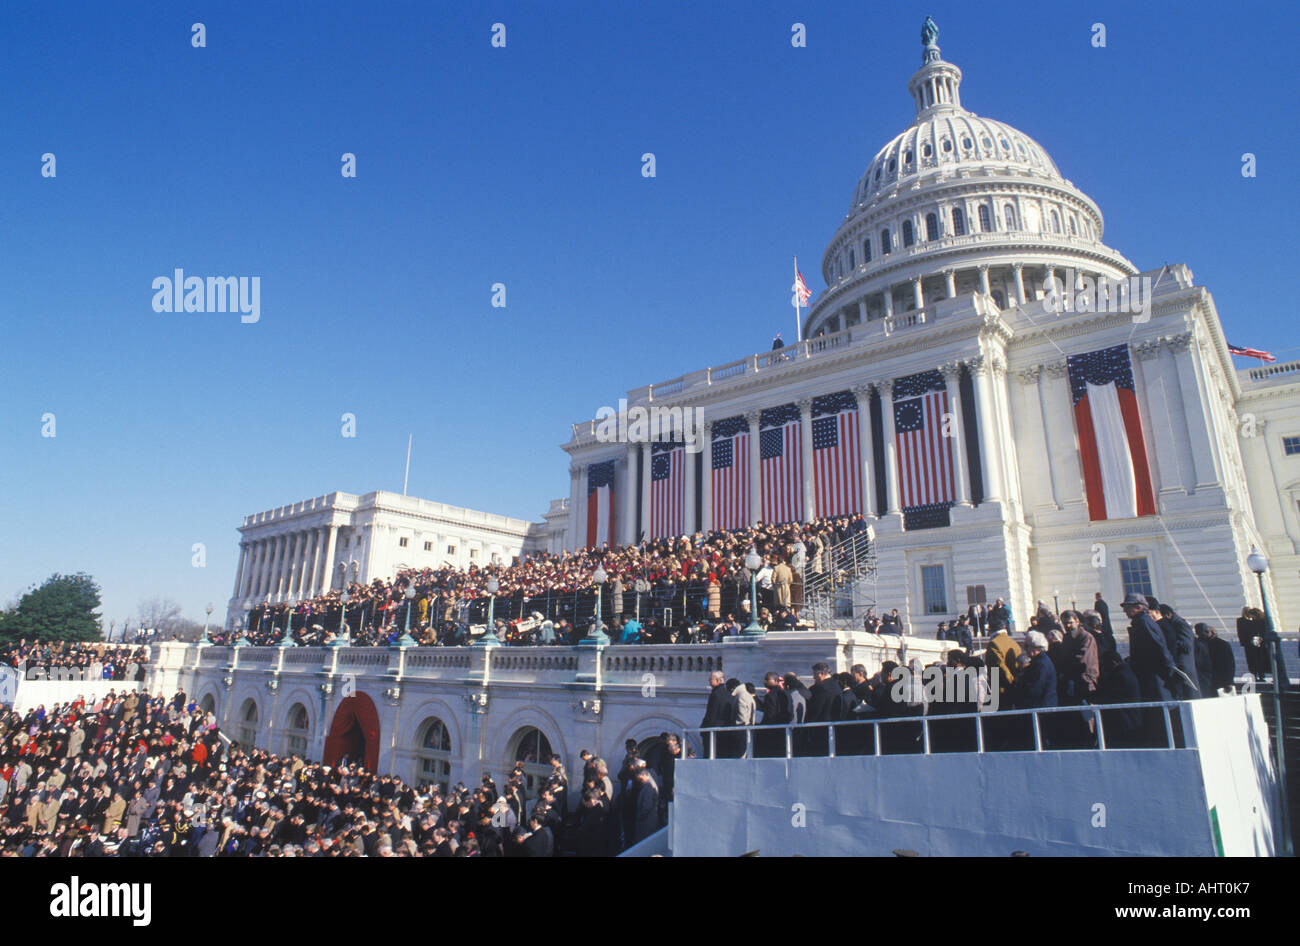 Visages dans la foule sur Bill Clinton s'Inauguration Day le 20 janvier 1993 à Washington DC Banque D'Images